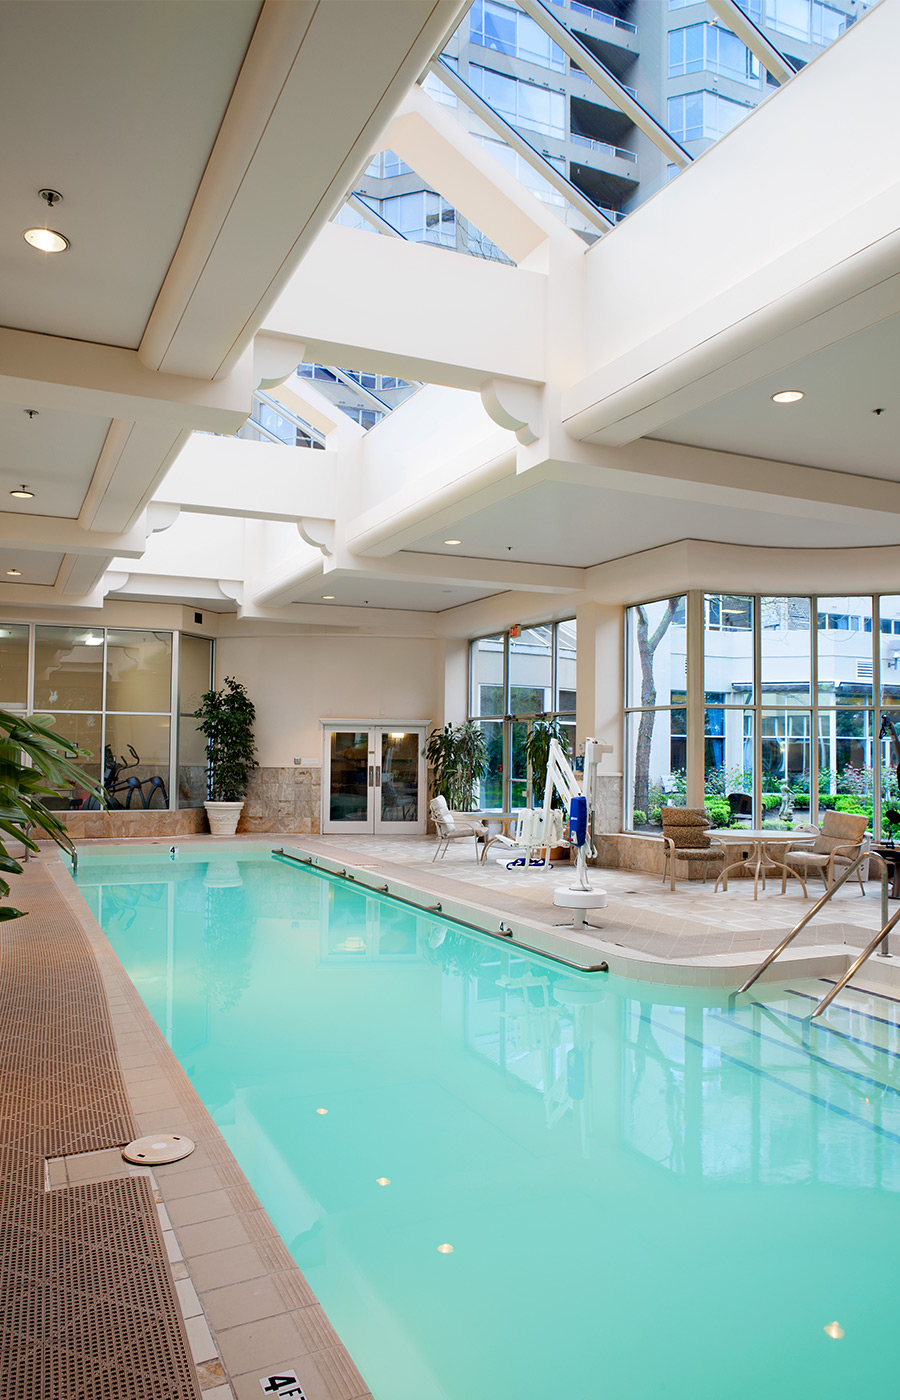 The indoor pool at Pacific Regent Bellevue.